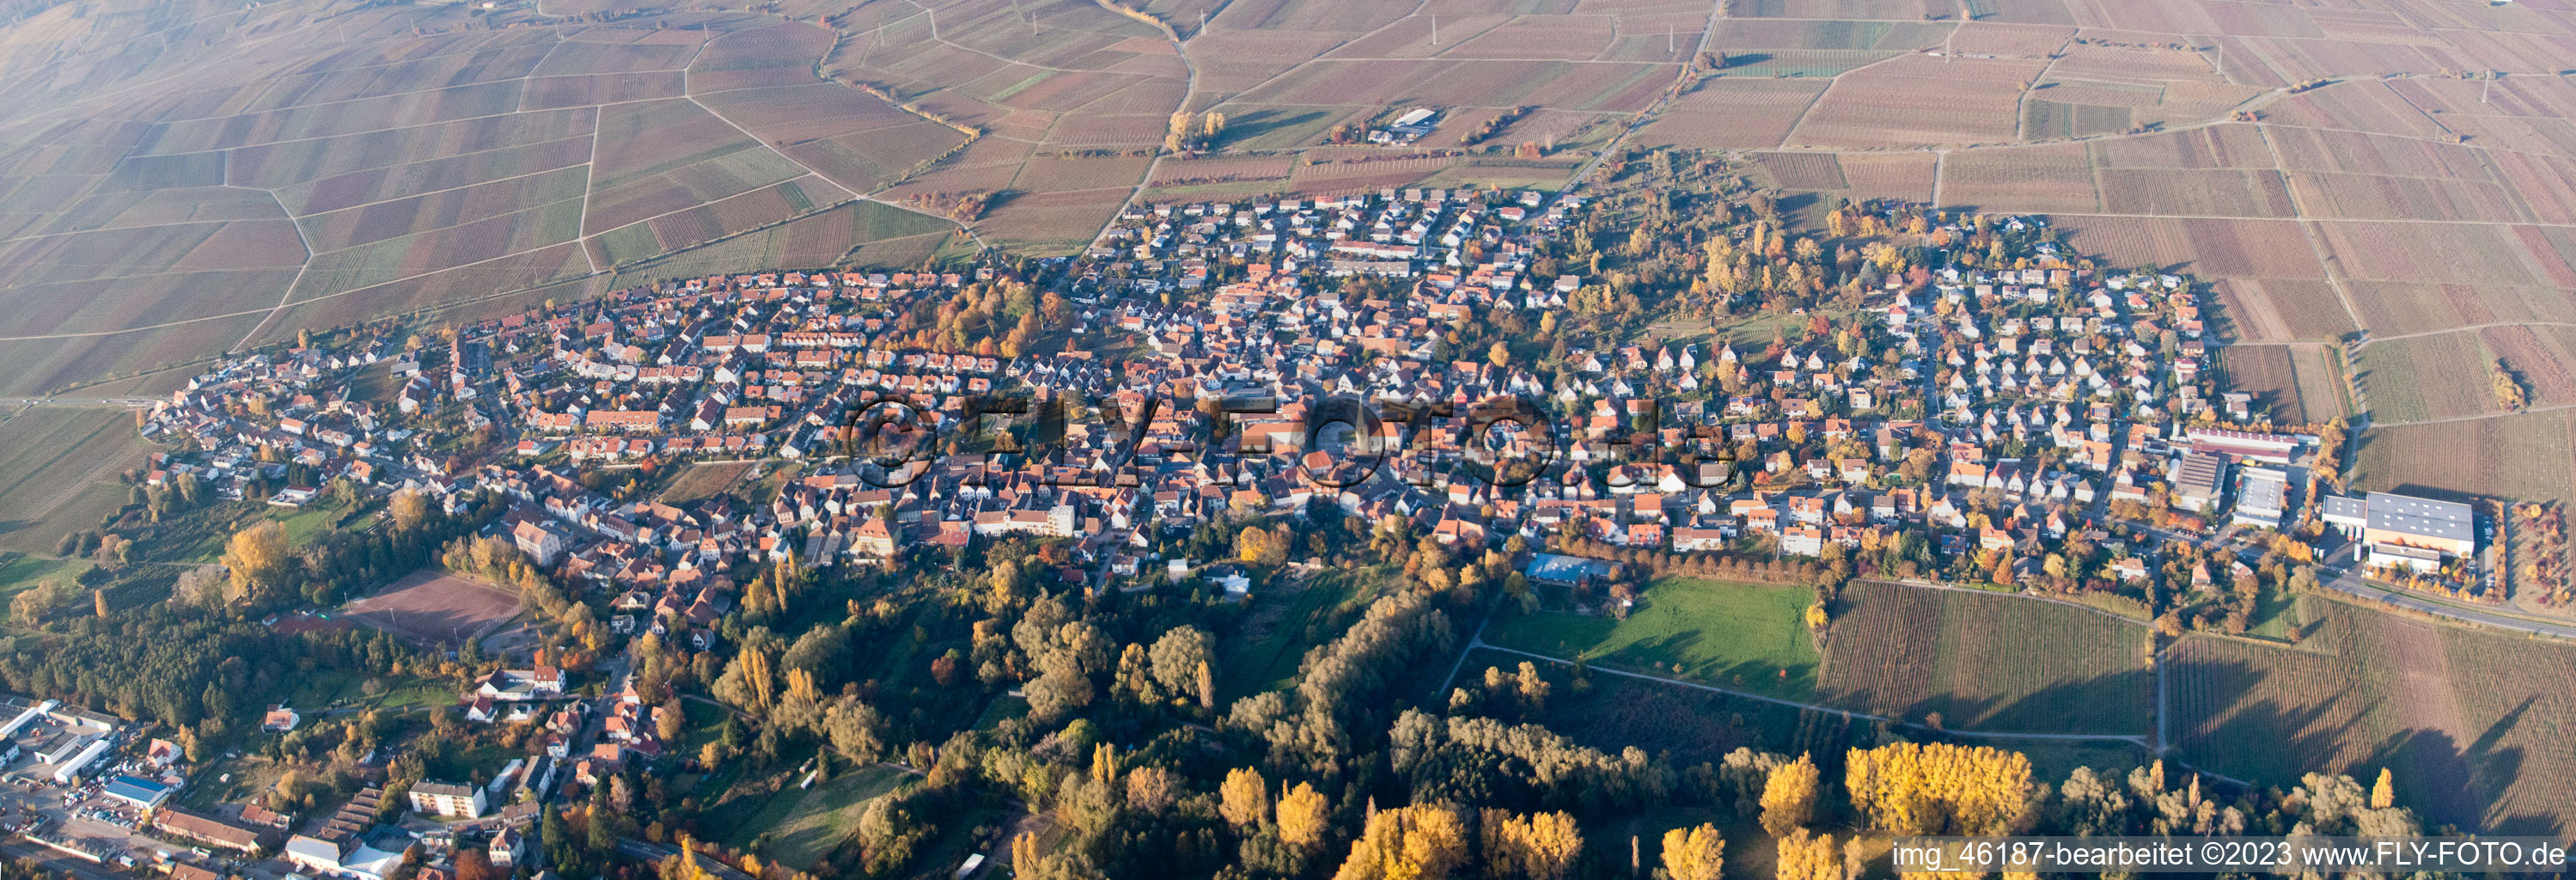 Ortsteil Godramstein in Landau in der Pfalz im Bundesland Rheinland-Pfalz, Deutschland von der Drohne aus gesehen